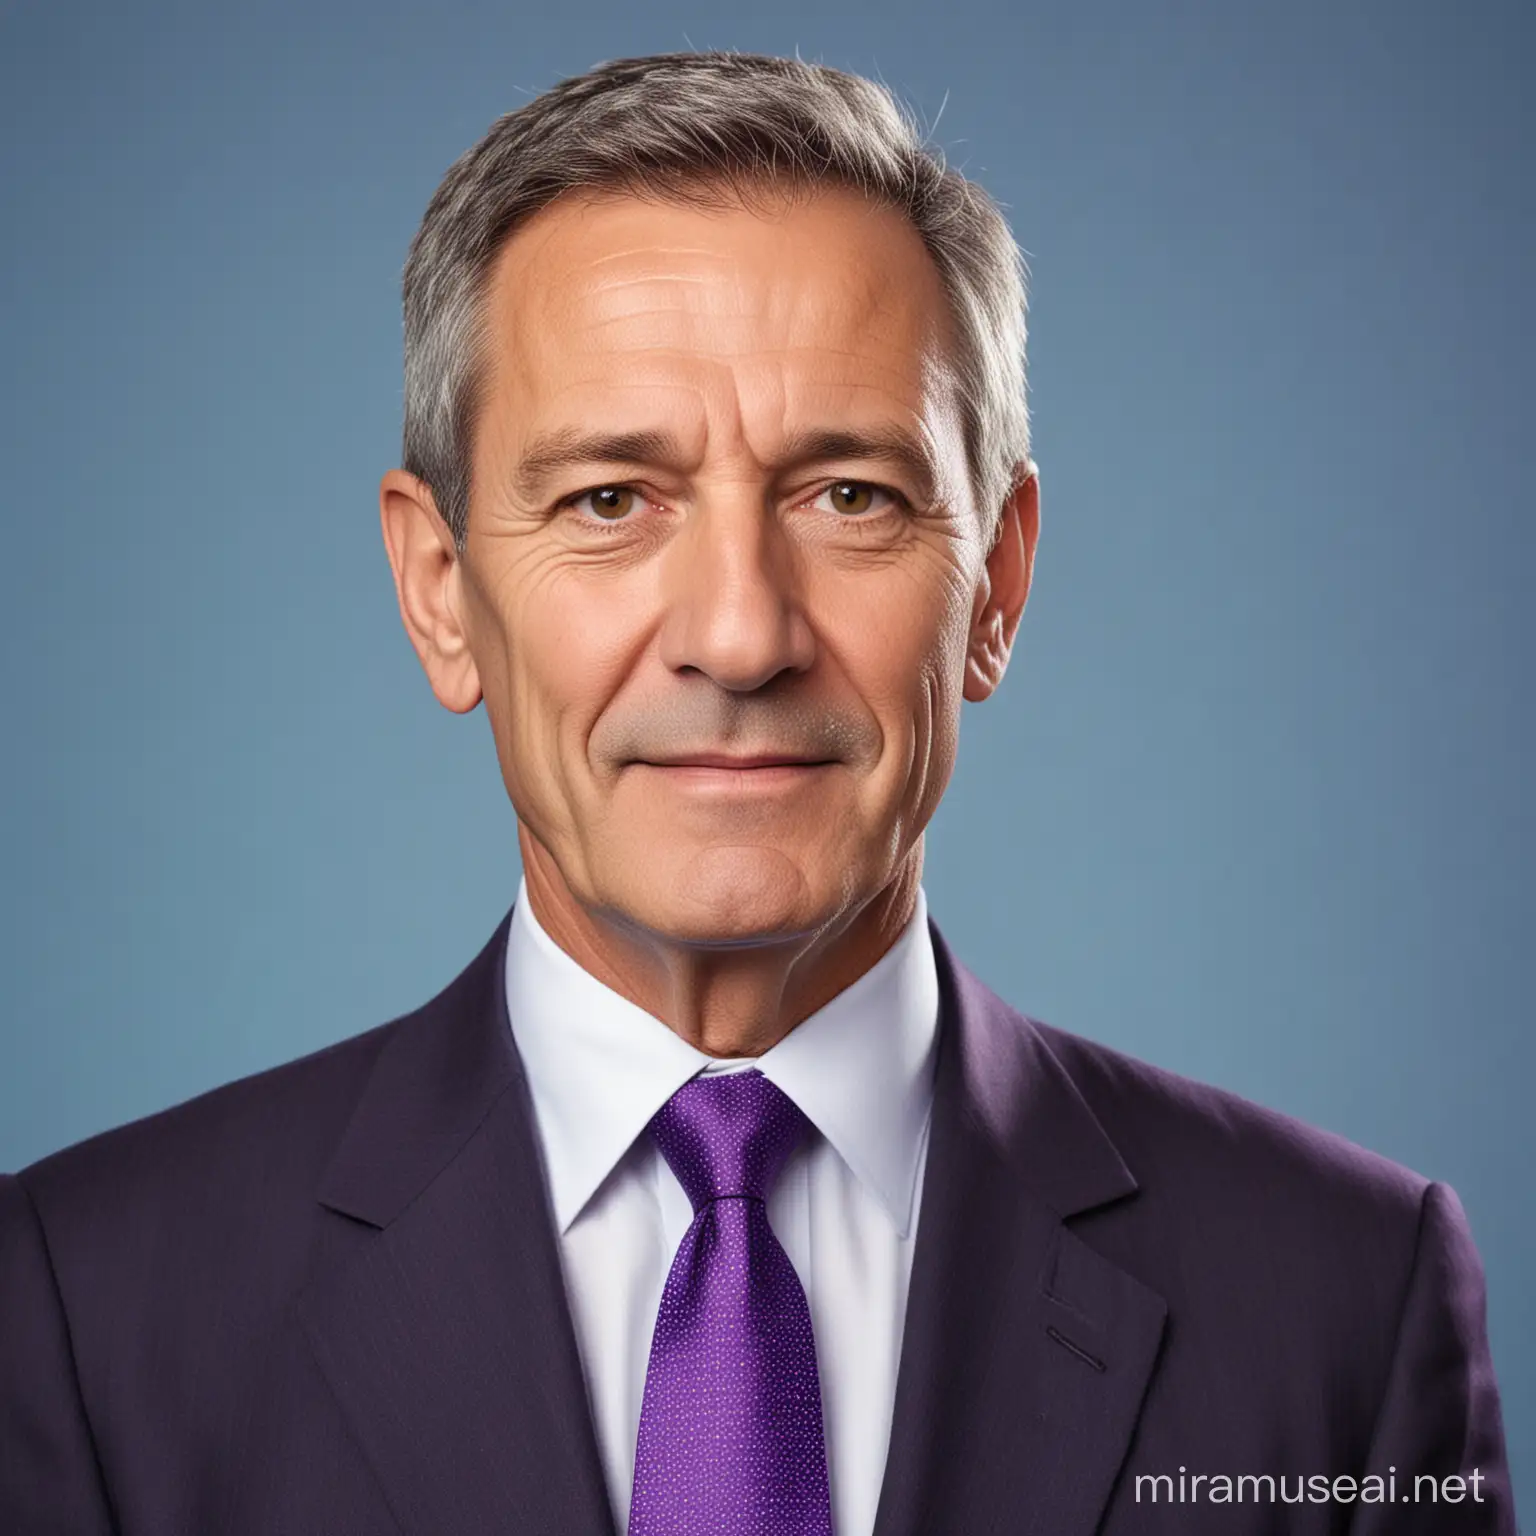 Político hombre con pelo muy corto de 62 años con corbata morada con fondo azul